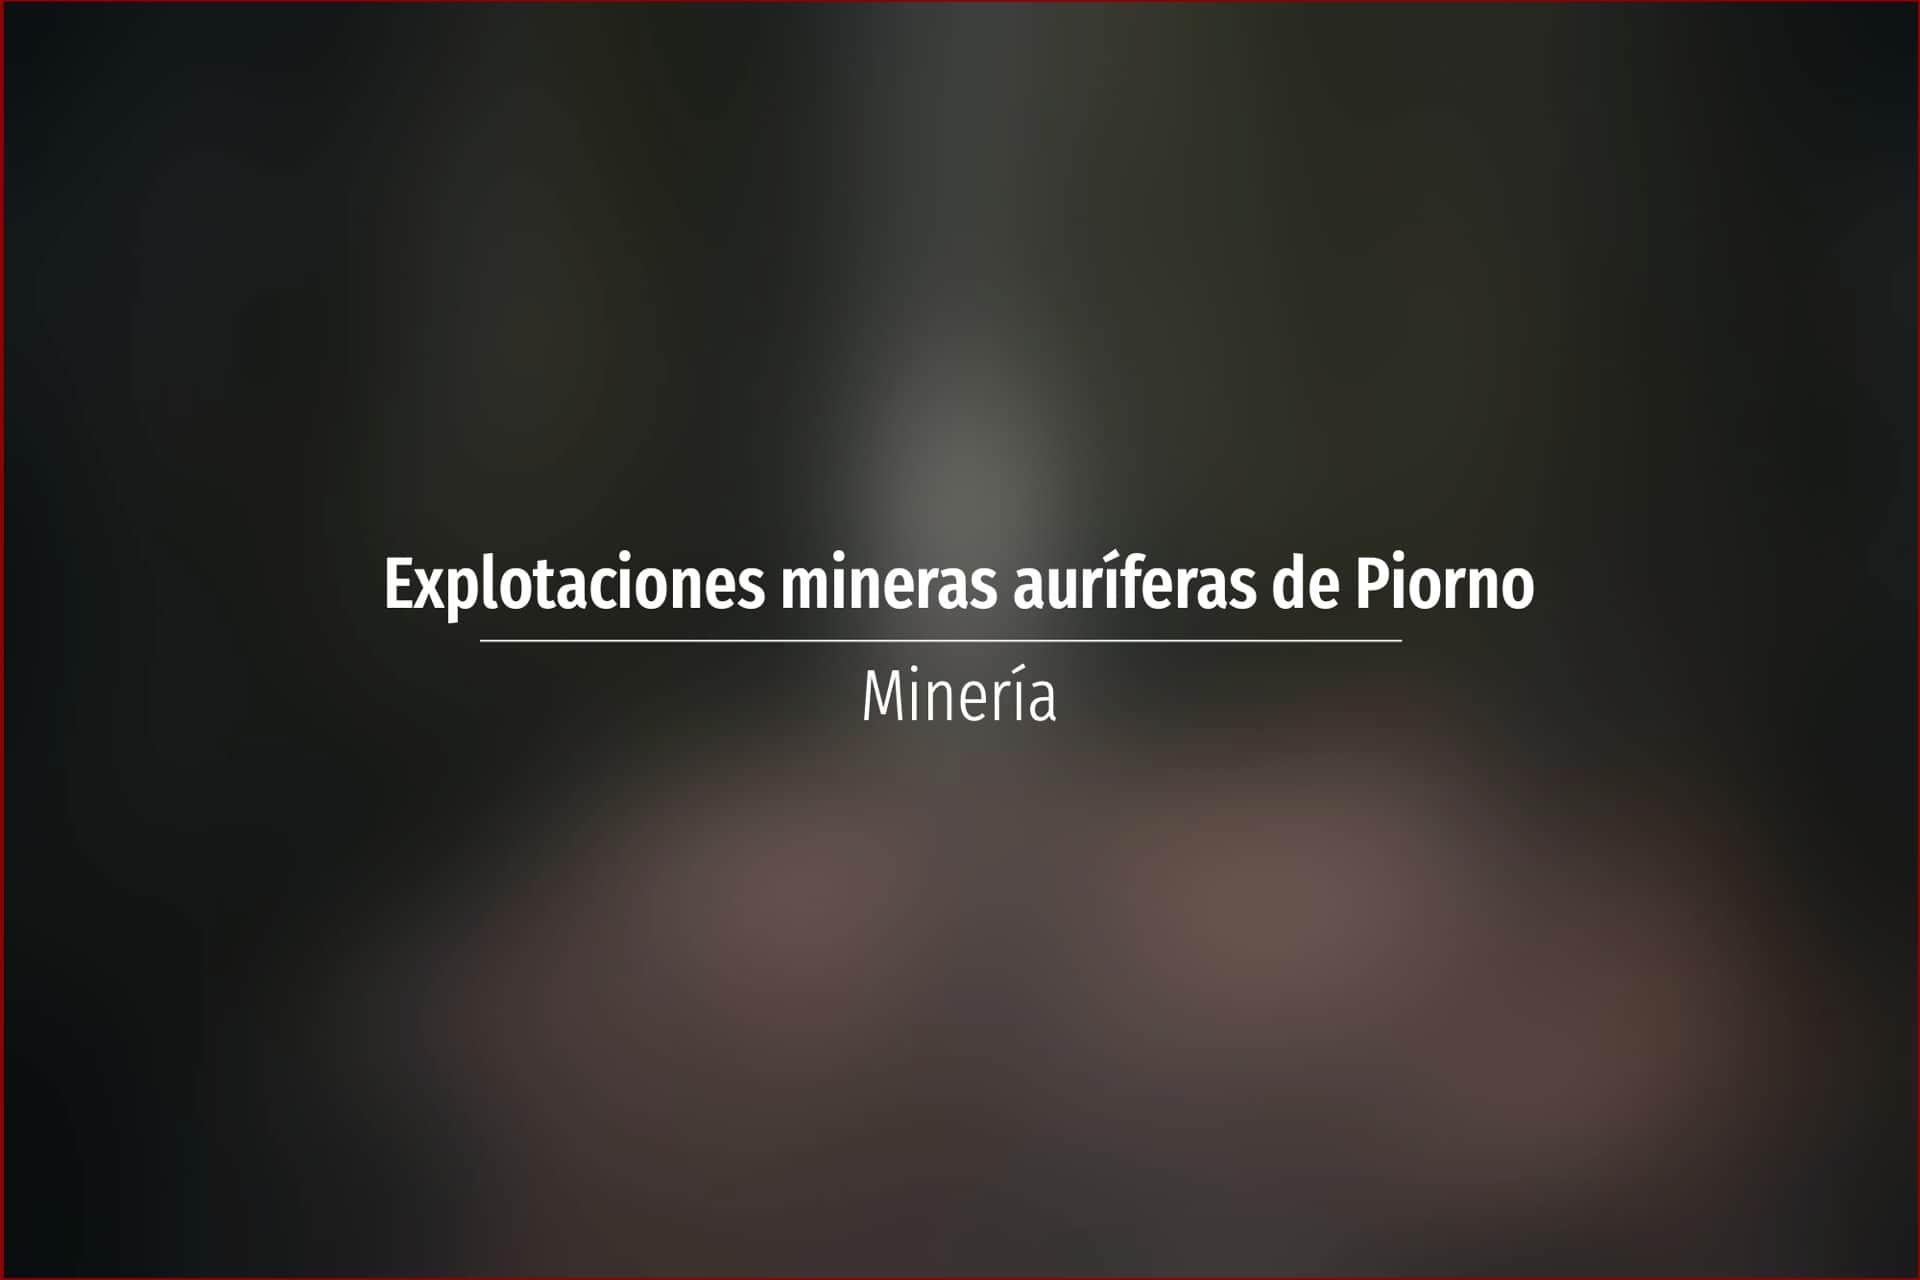 Explotaciones mineras auríferas de Piorno